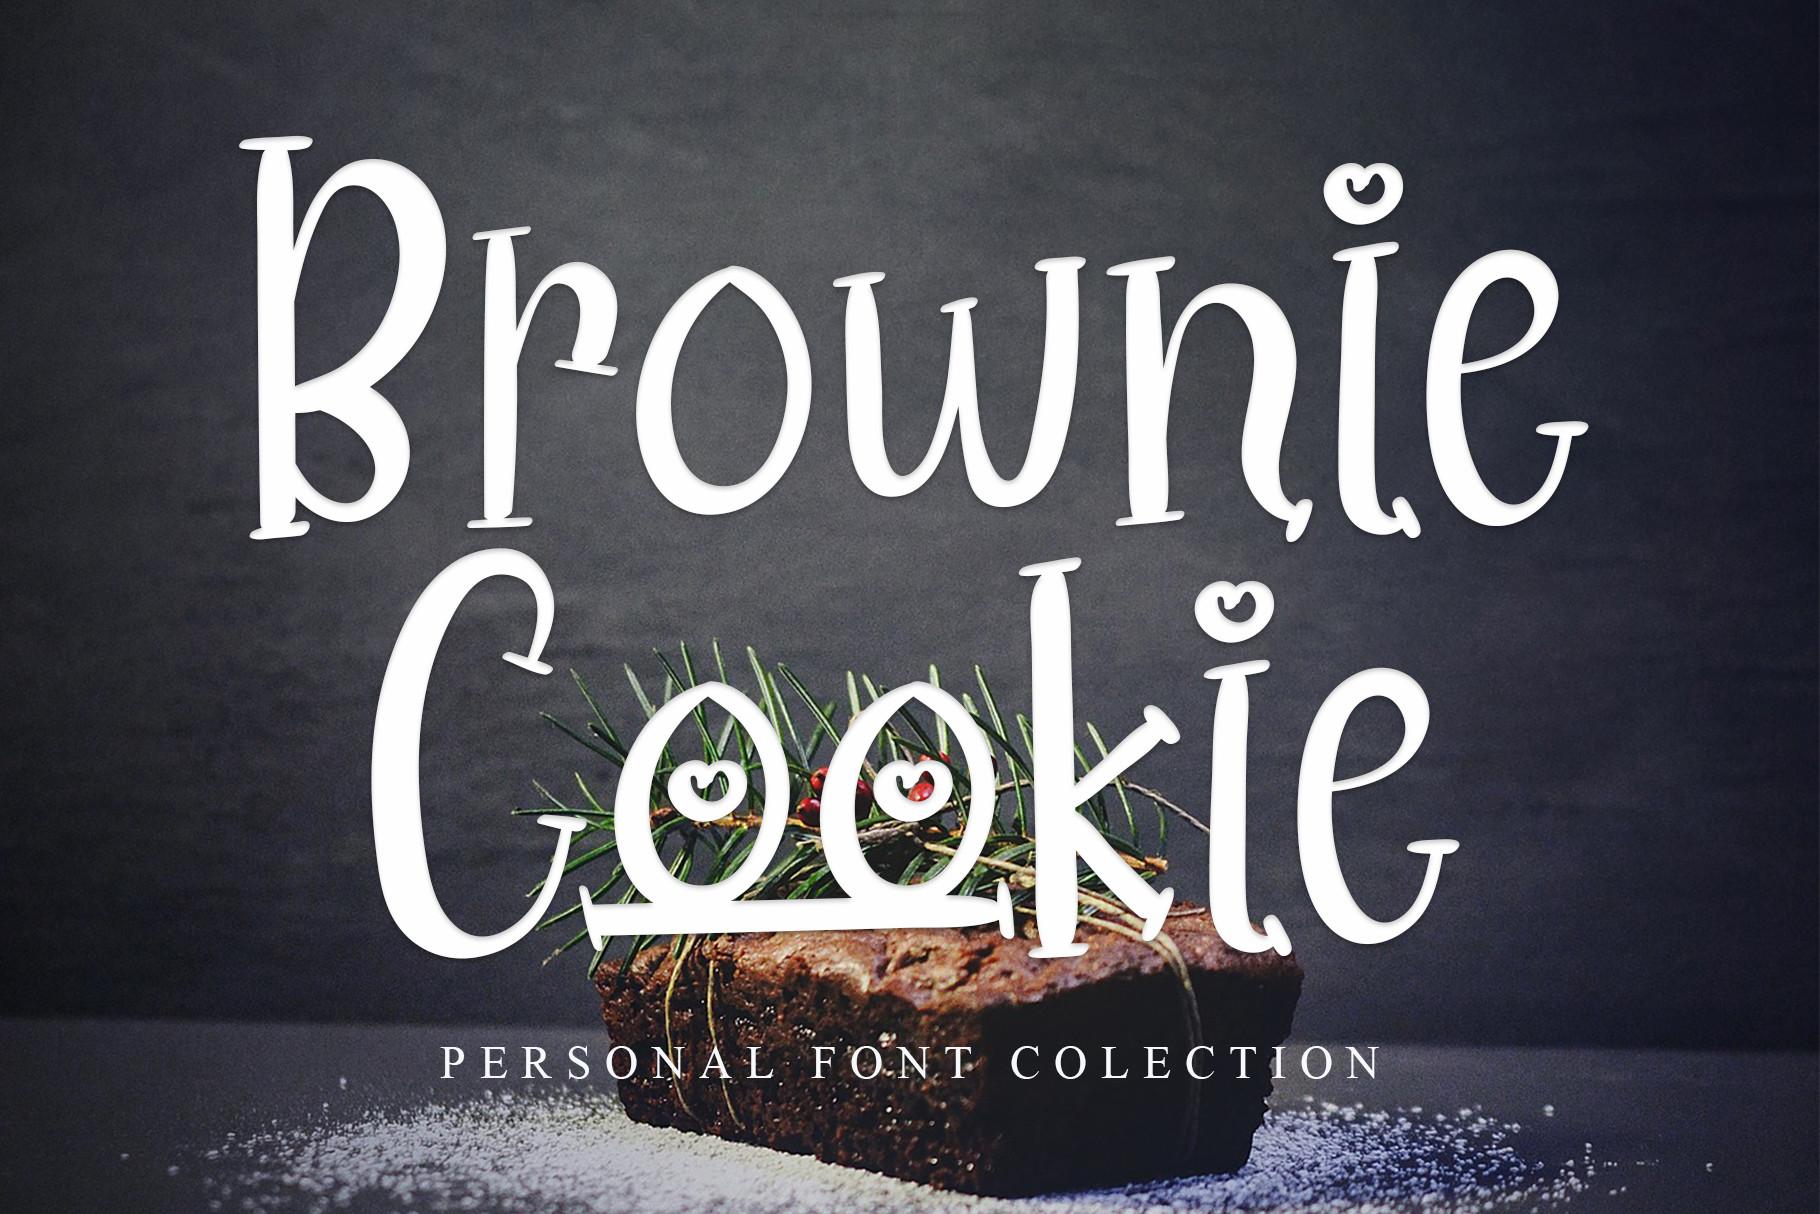 Brownie Cookie Font